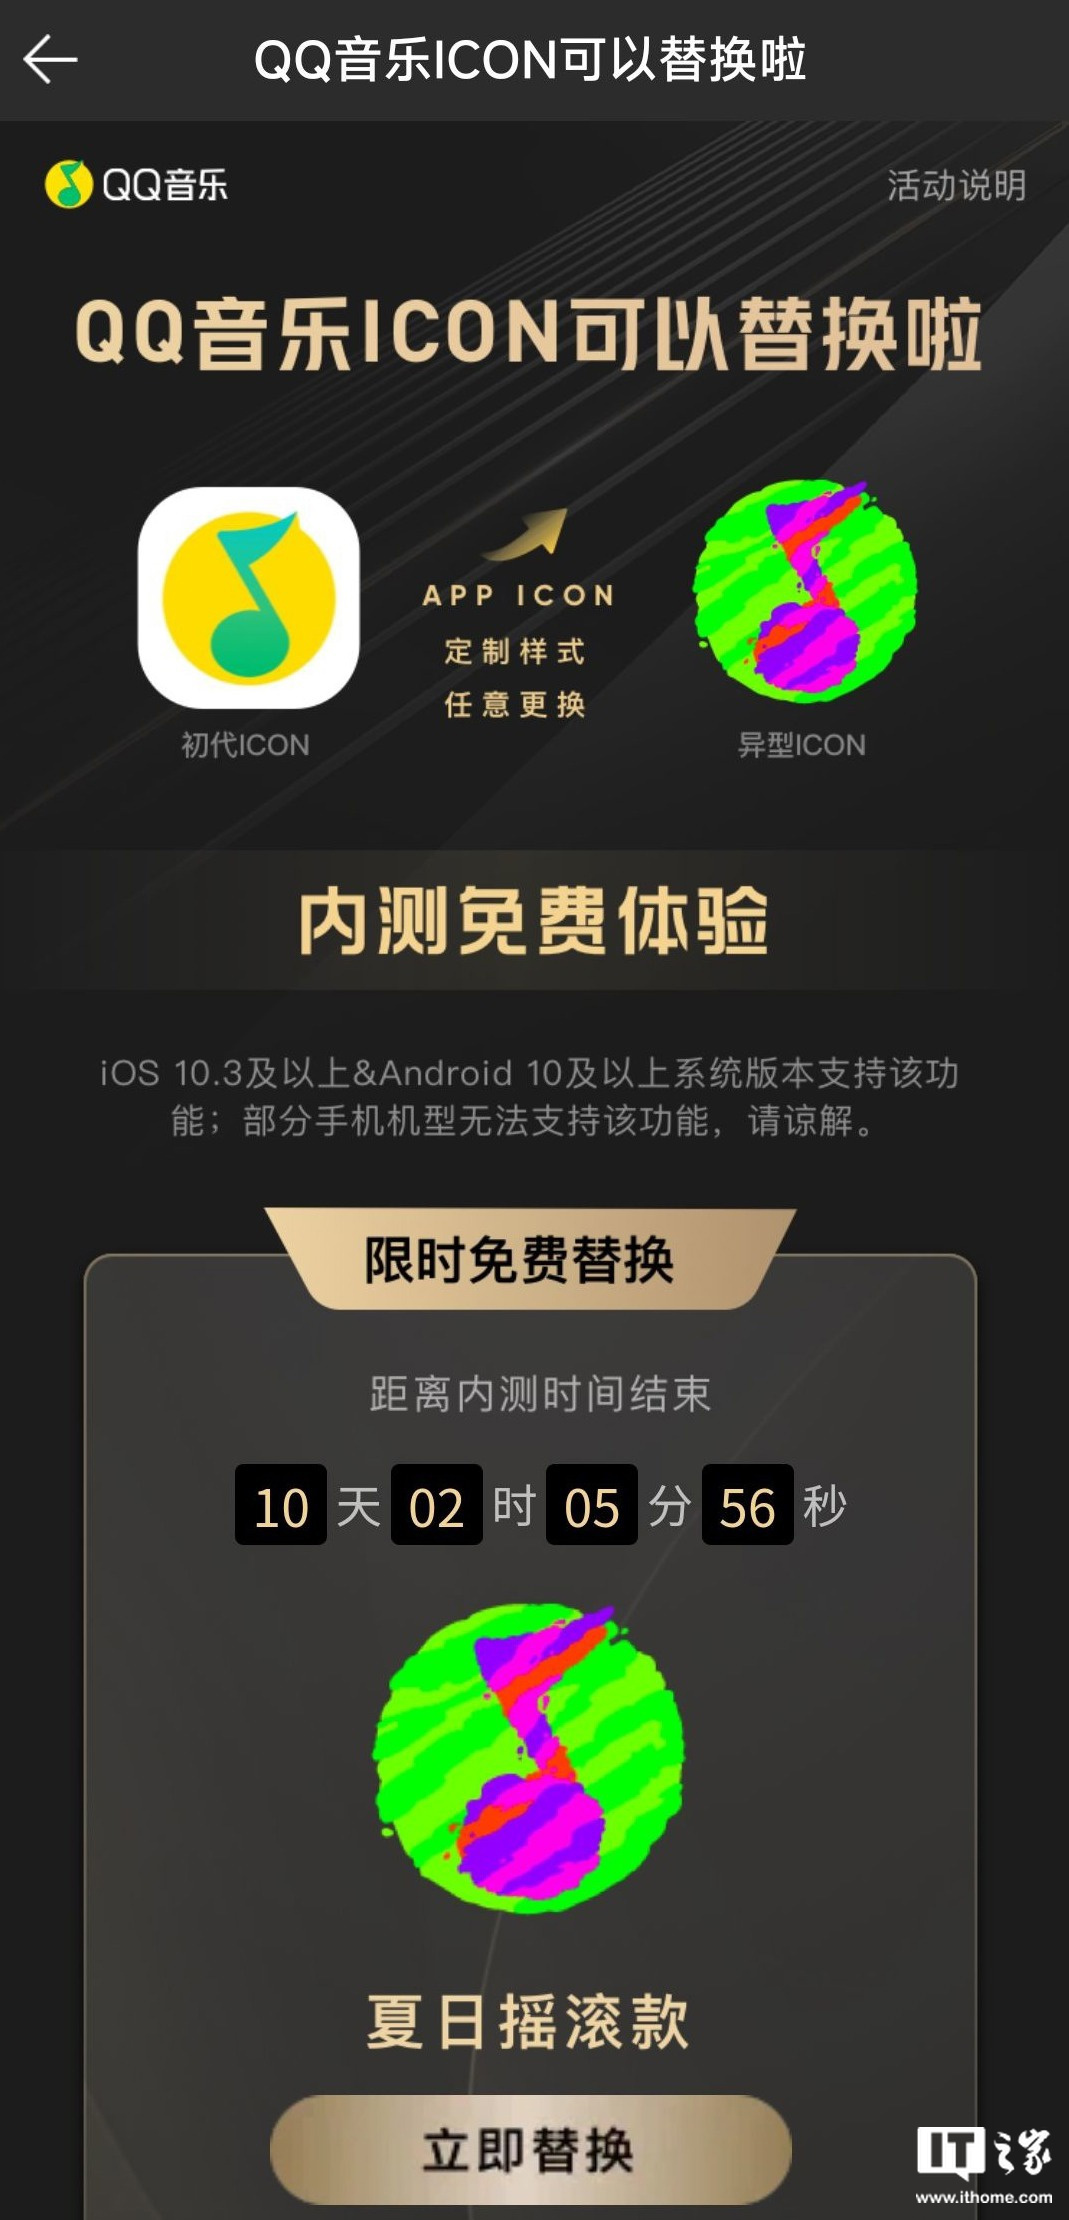 QQ 音乐 App 内测免费更换图标，需 iOS 10.3 / 安卓 10 及以上（qq音乐app图标图片）